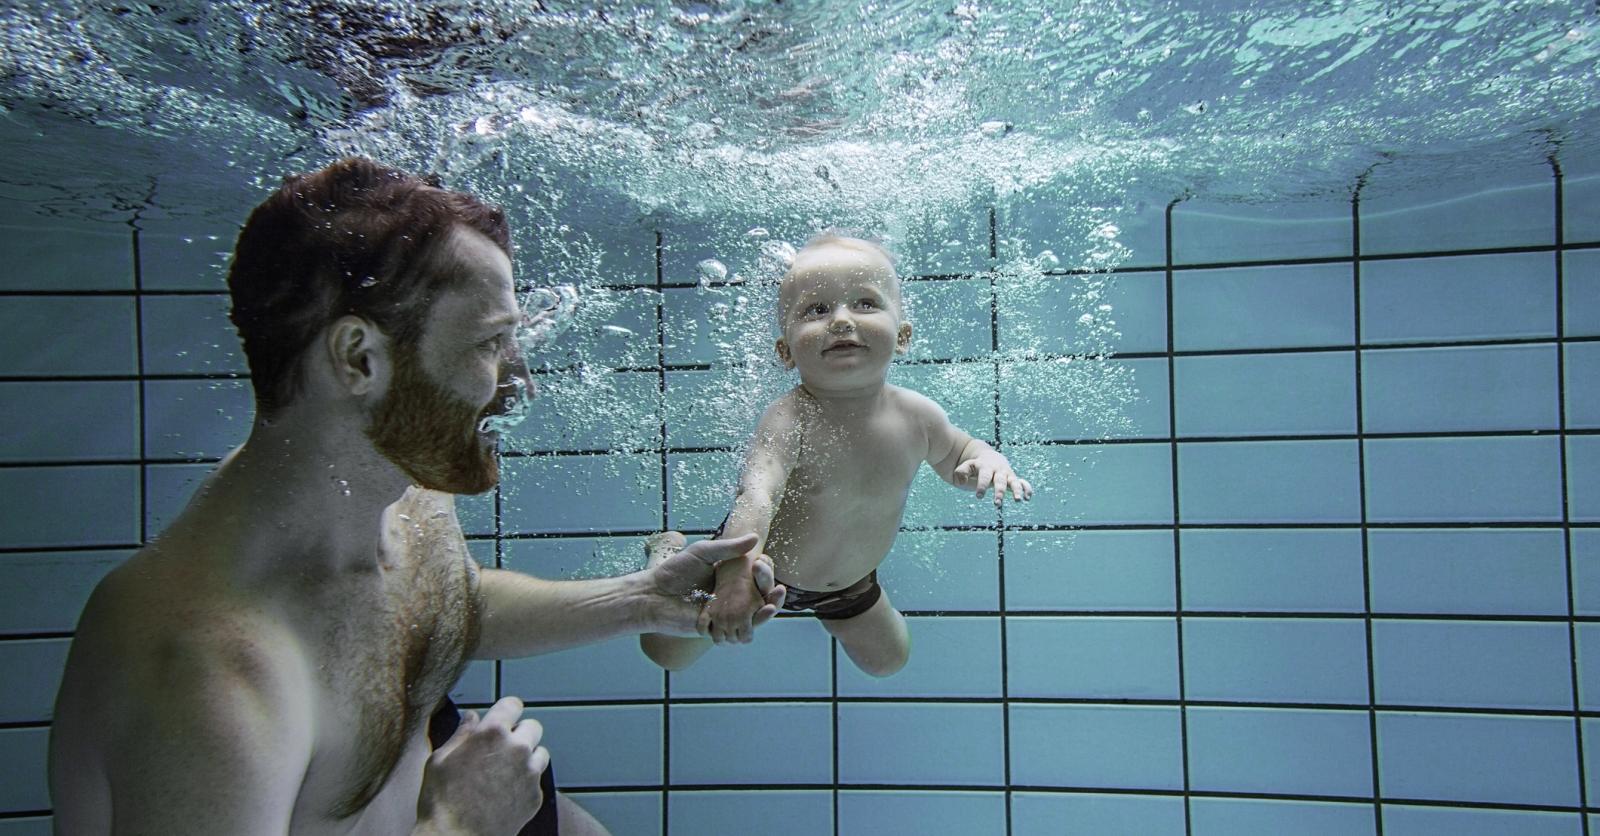 Comment faire découvrir l'eau à mon Bébé? La piscine à partir de quel âge?  Quelques conseils